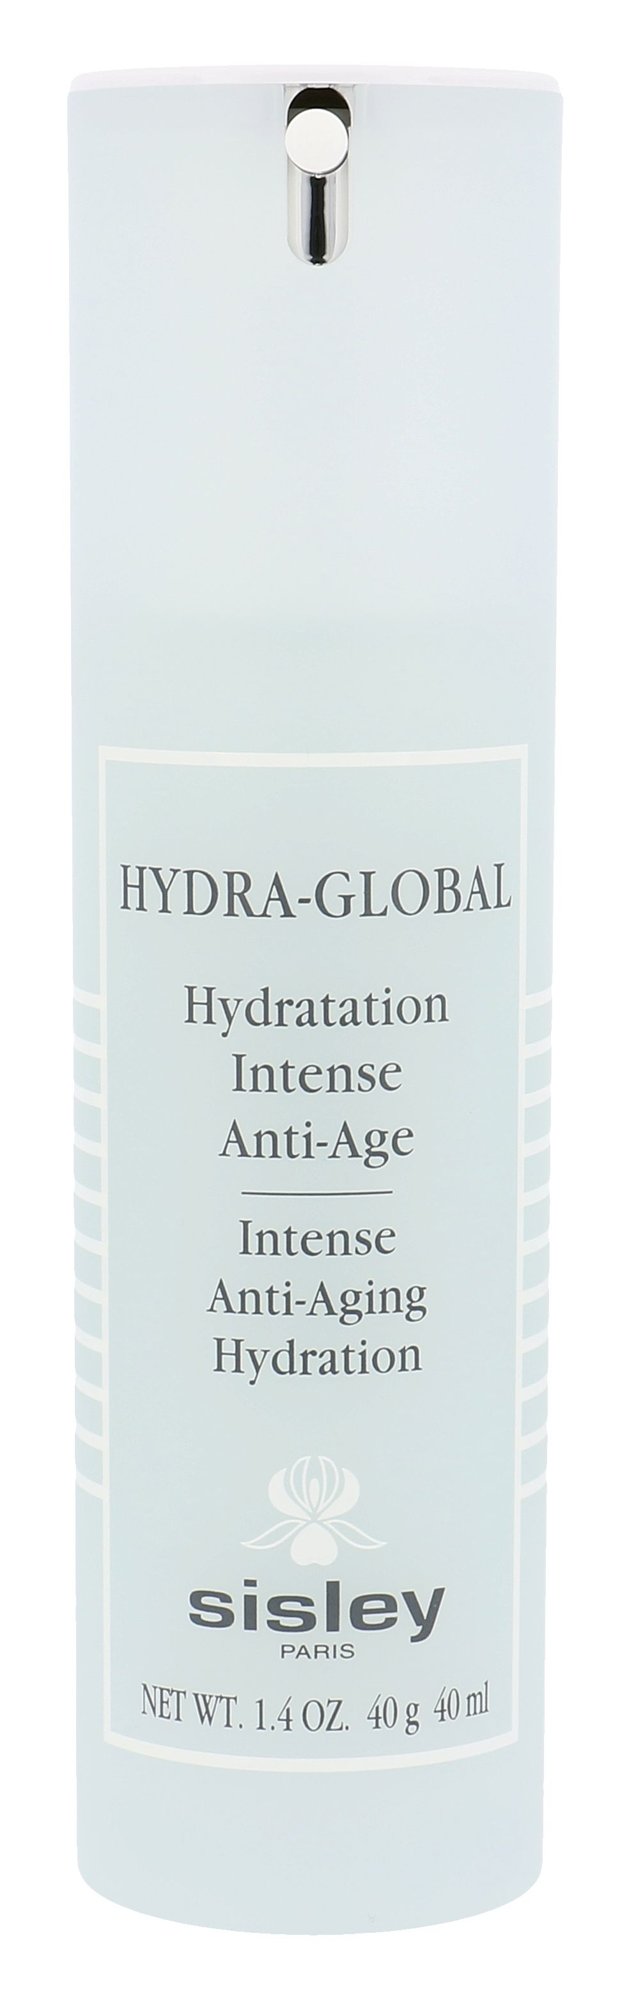 Sisley Hydra-Global Intense Anti-Aging Hydration 40ml NIŠINIAI dieninis kremas